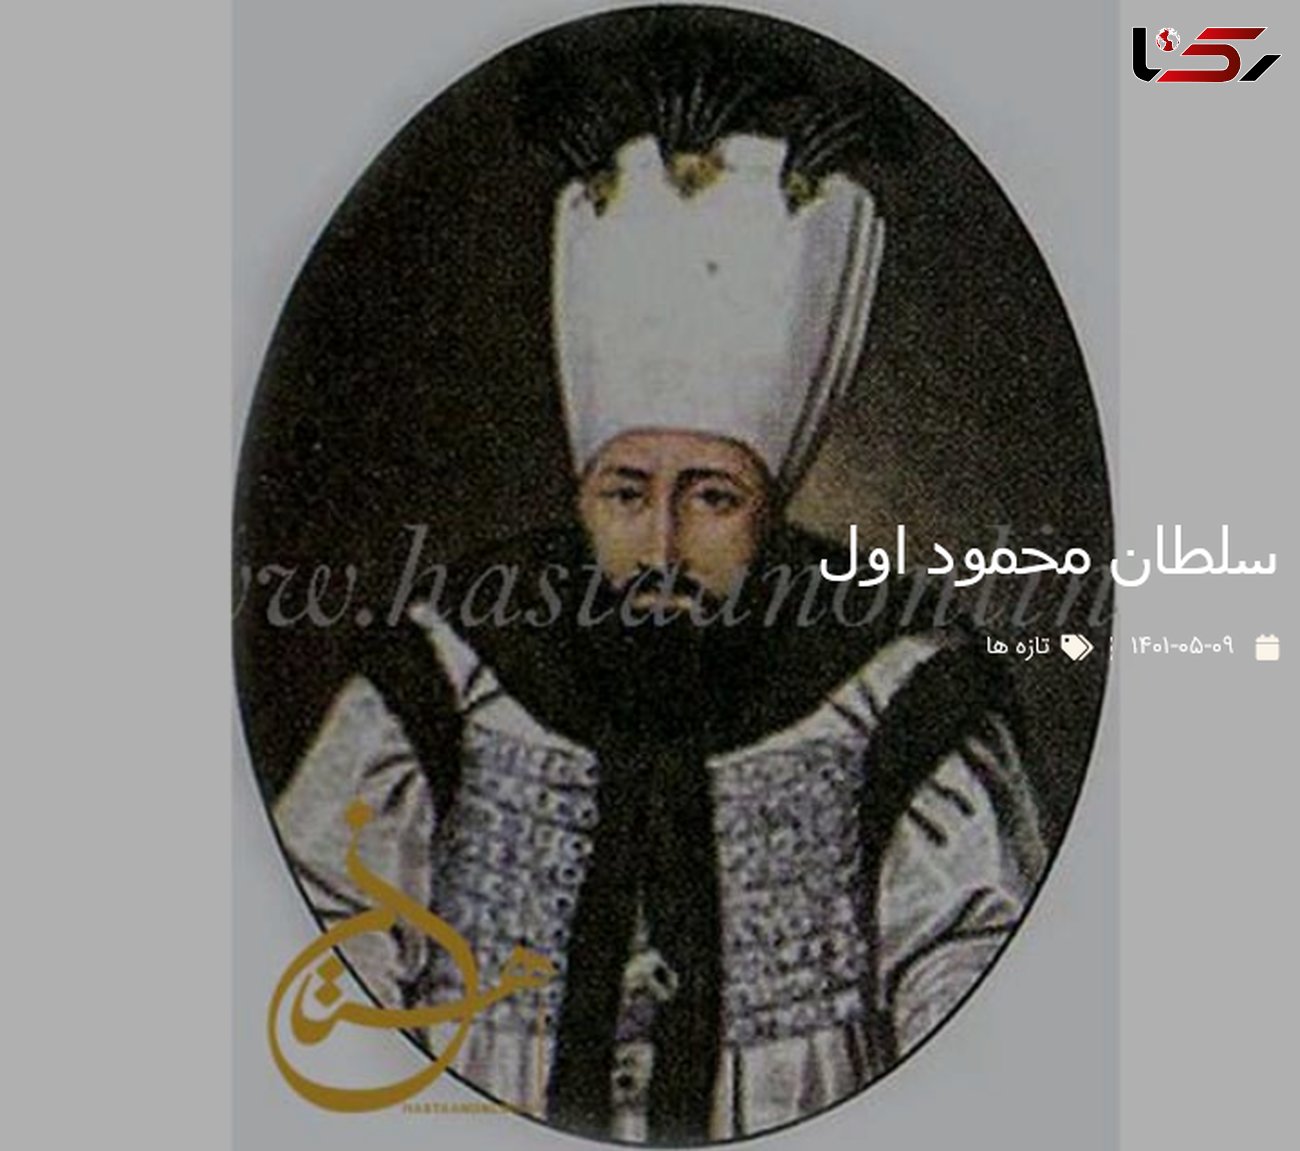 سلطان محمود اول